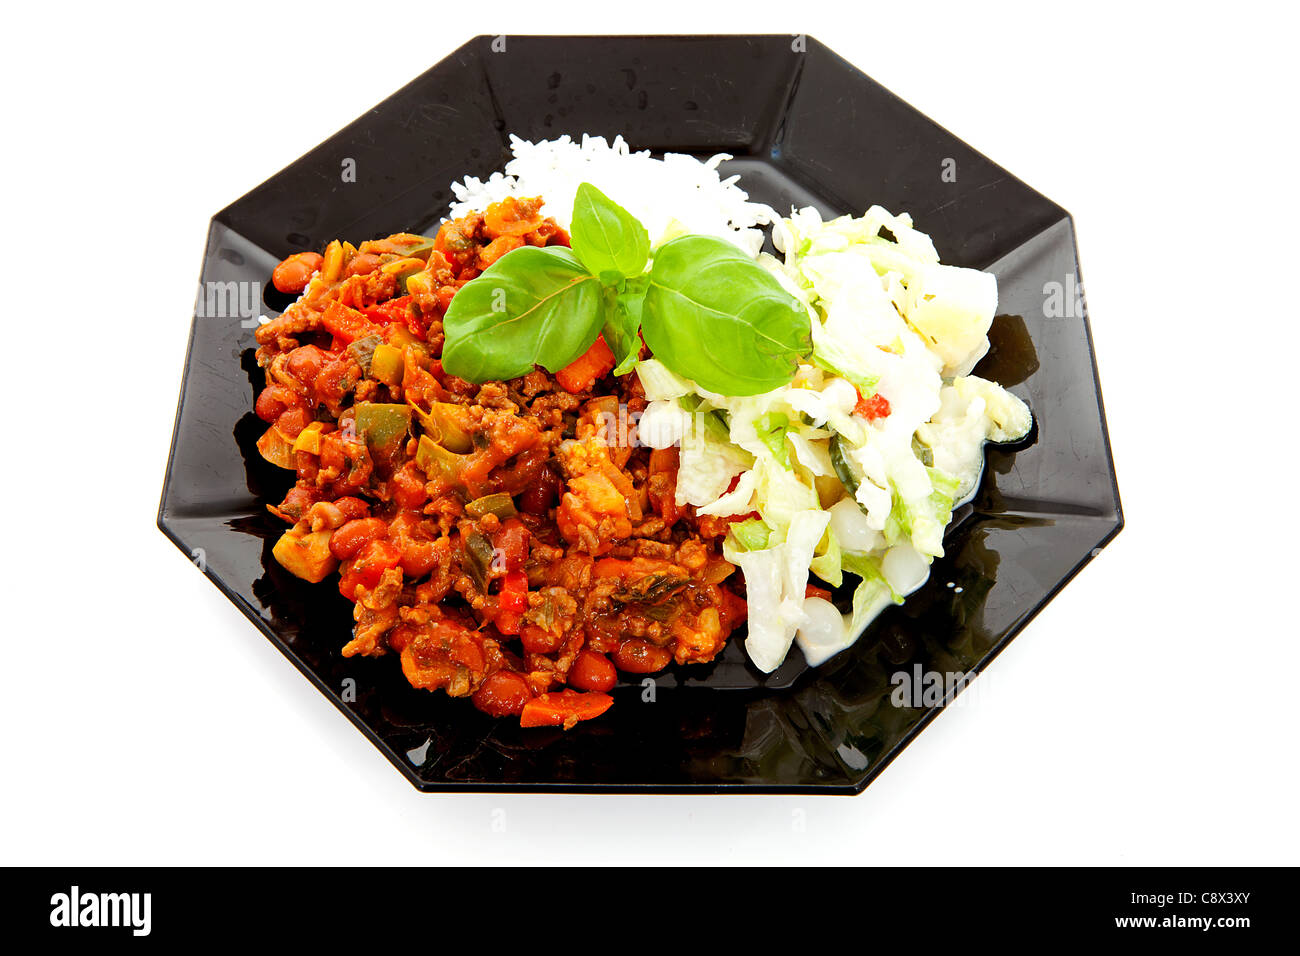 Plaque avec de délicieux chili con carne, riz et salade verte sur fond blanc Banque D'Images